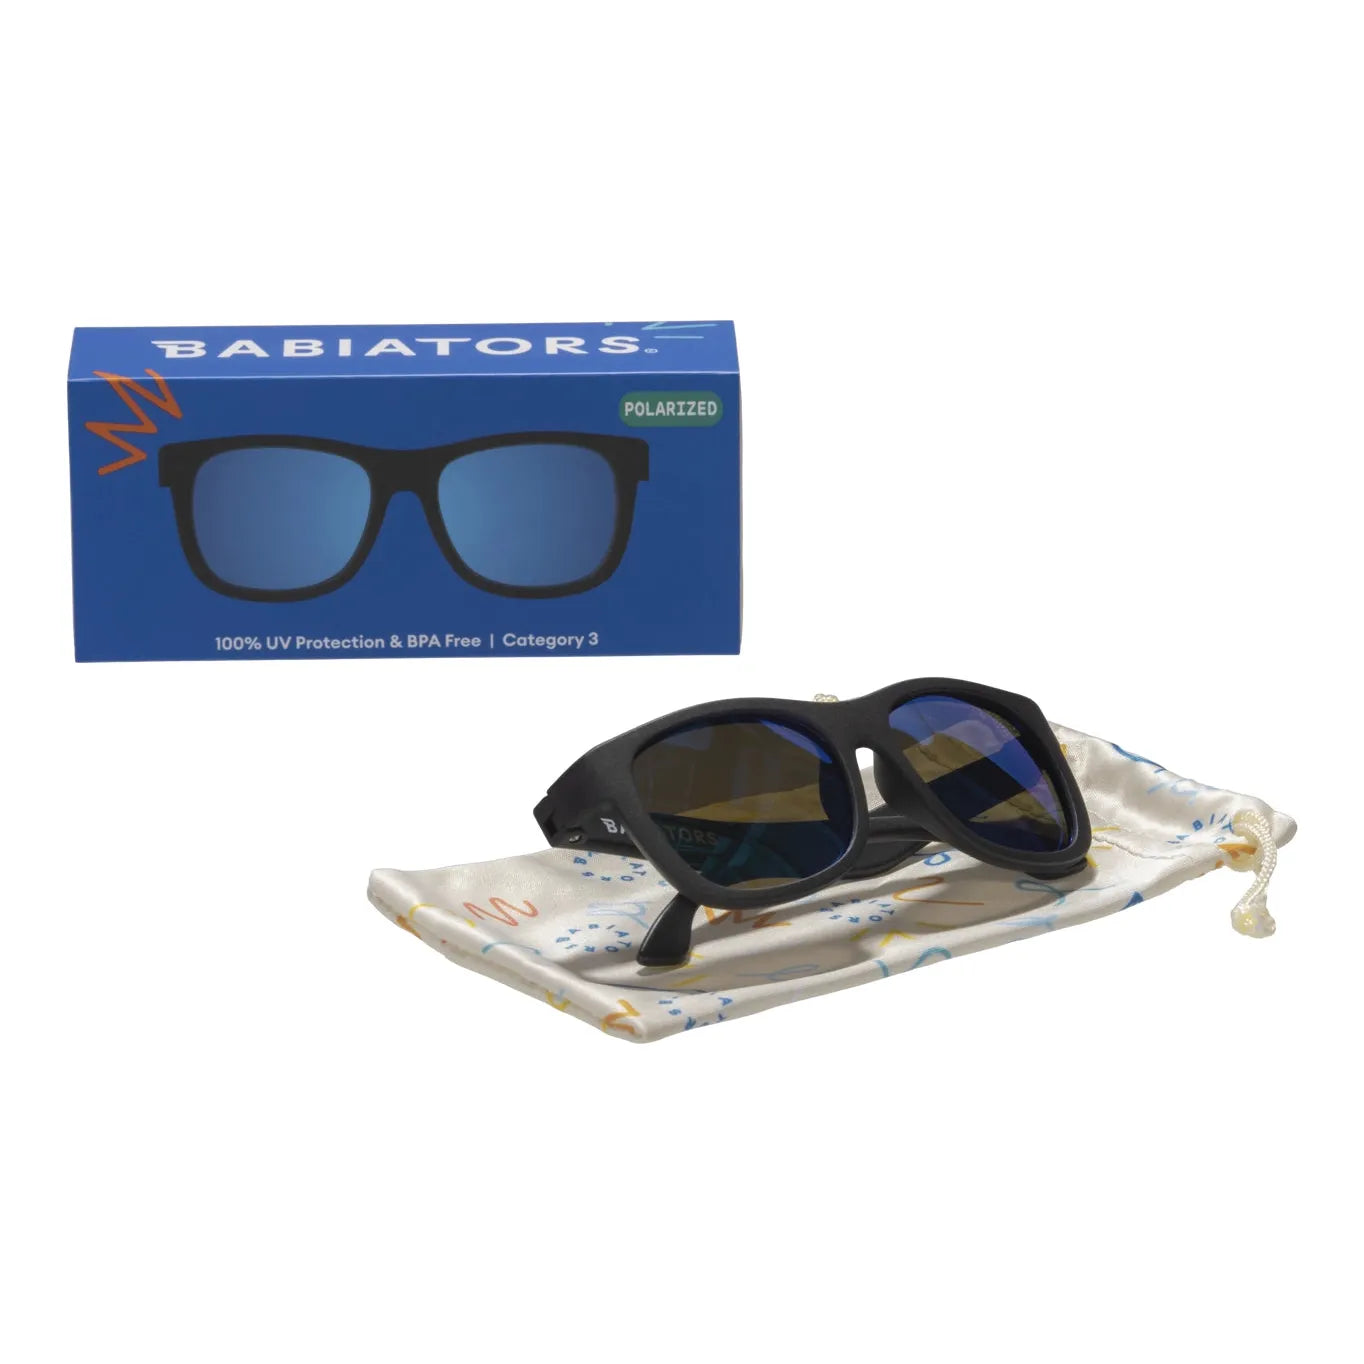 Sunglasses - Jet Black Navigator